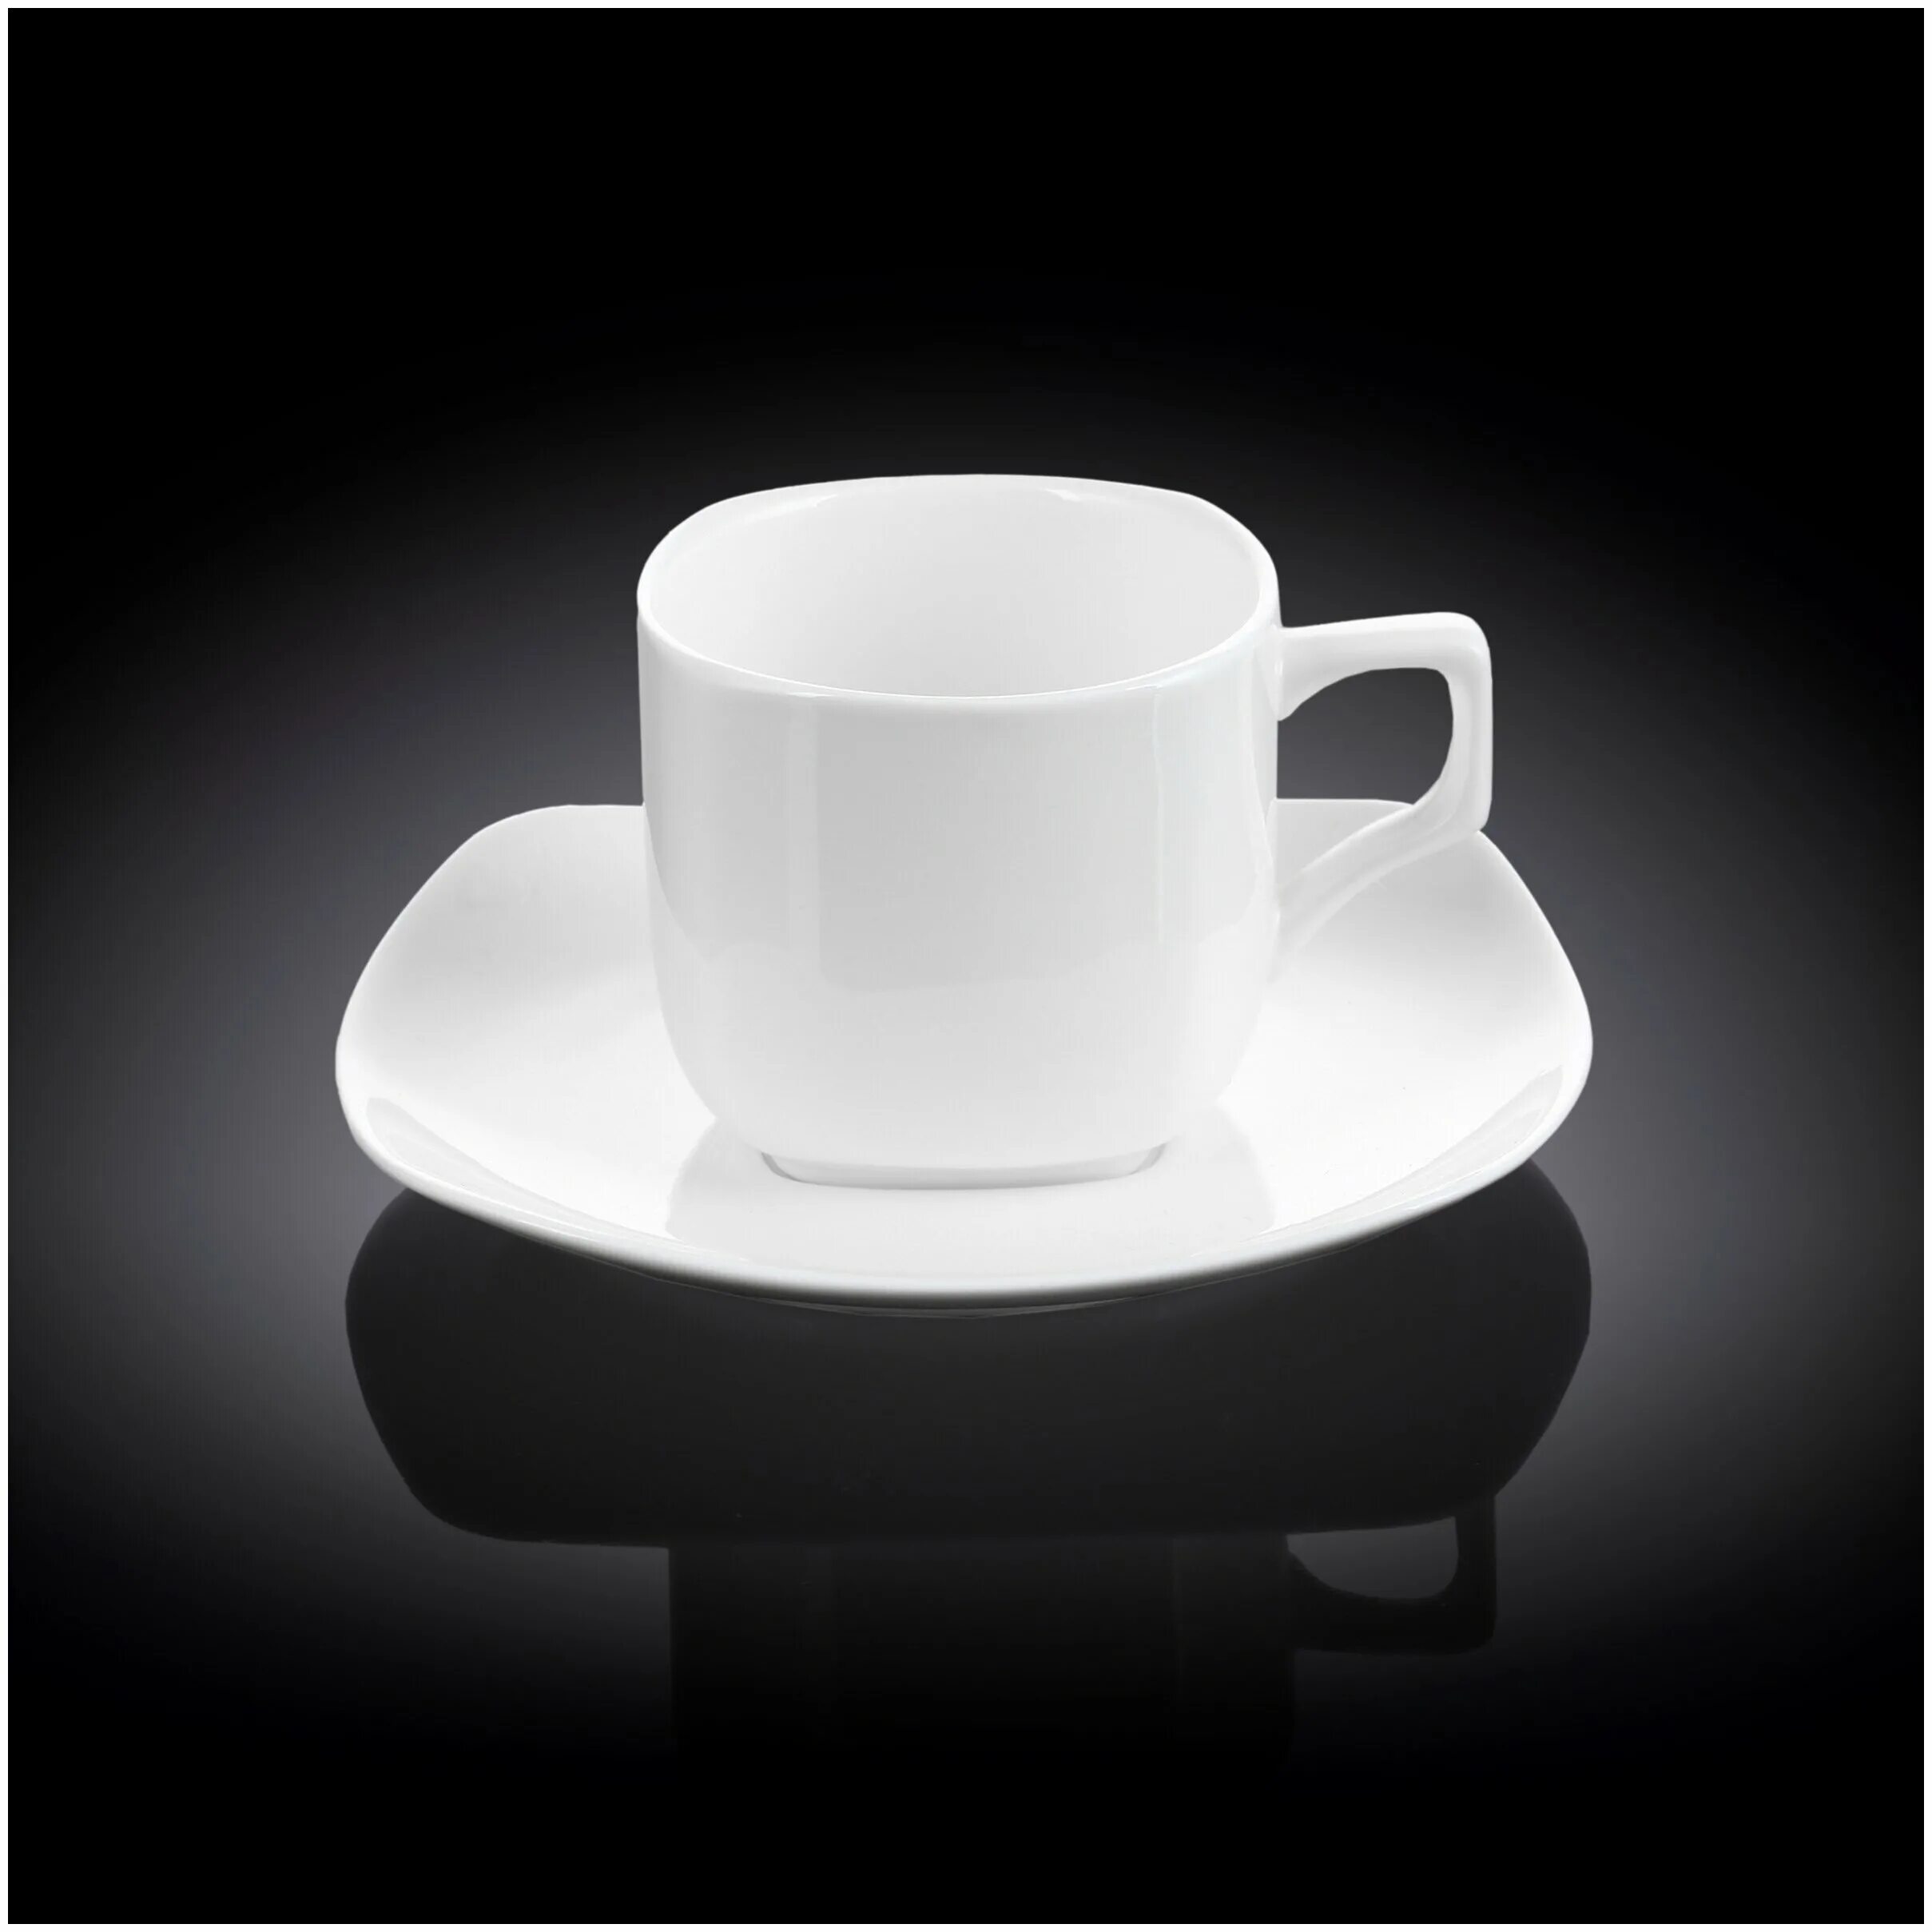 Посуда вилмакс купить. Wilmax Nordic w31003318. Wilmax England посуда Black. Чашка с блюдцем большого объема. Чашка чайная Wilmax, 200 мл.